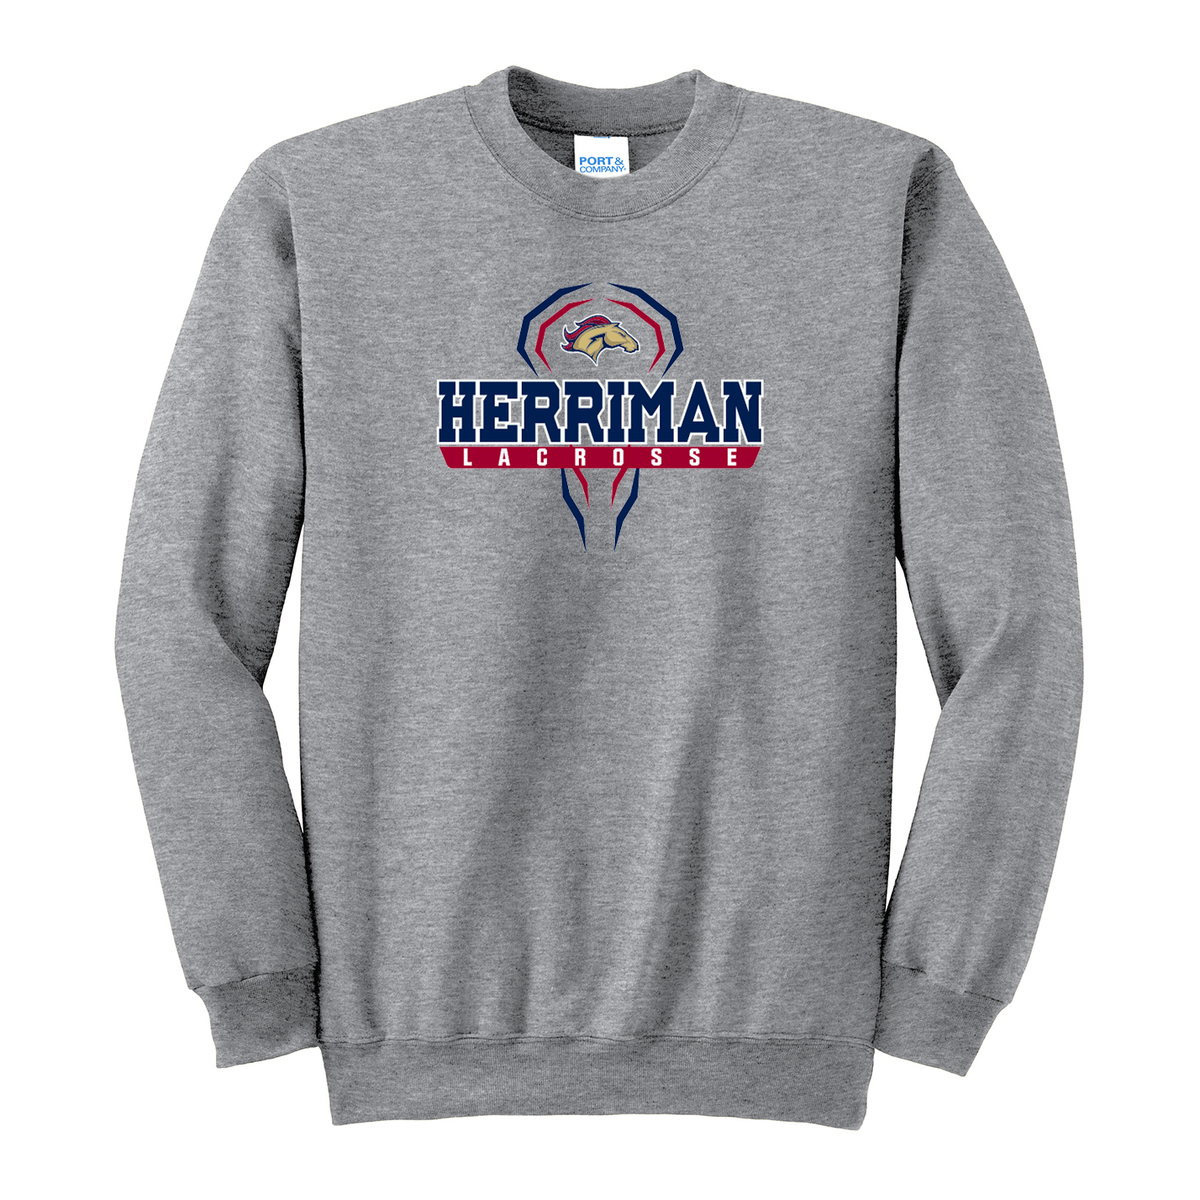 Herriman Mustangs Crew Neck Sweater